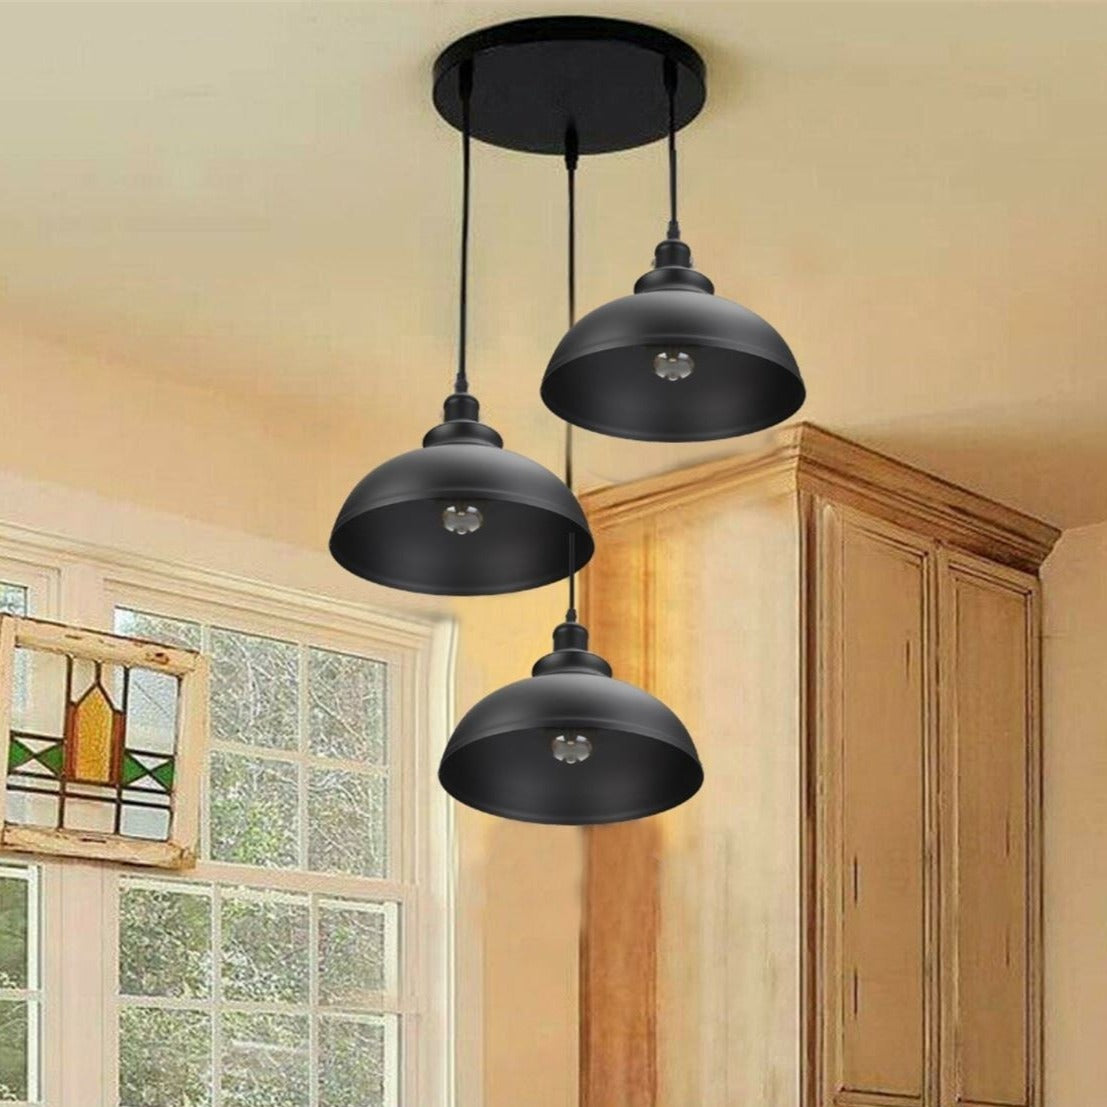 3 Ceiling lamp Pendant Cluster Light Modern Light Fitting Red/Black Lampshades- LEDSone UK Ltd